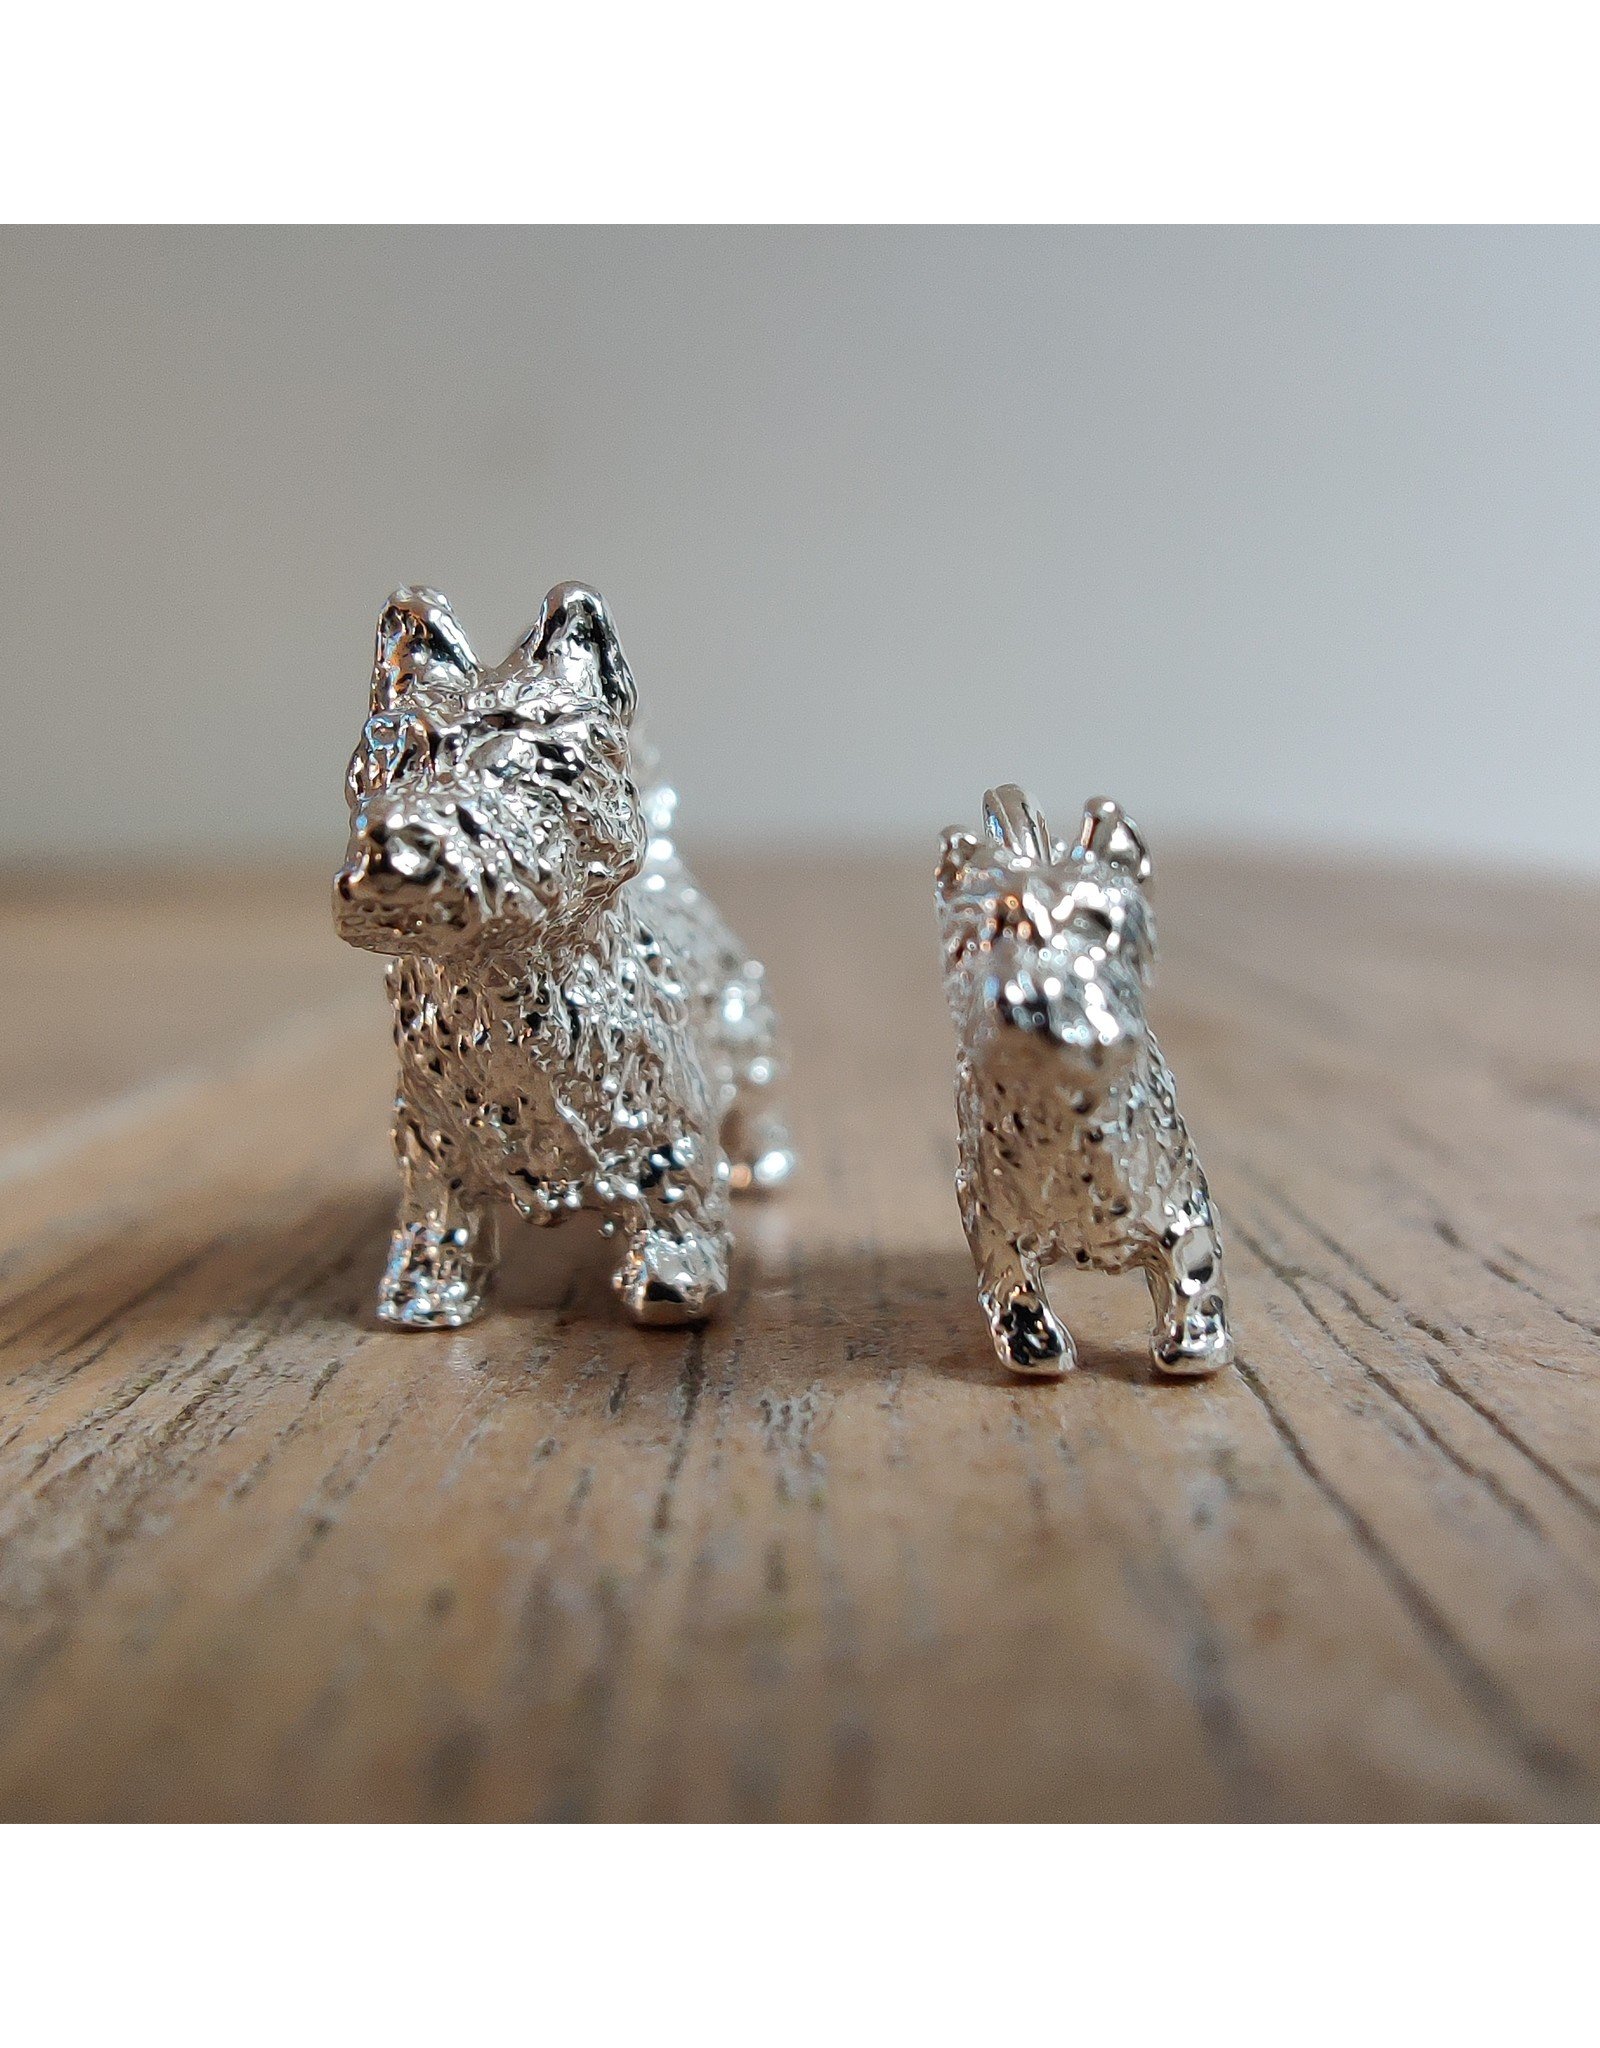 Handmade by Hanneke Weigel Zilveren Norwich terrier